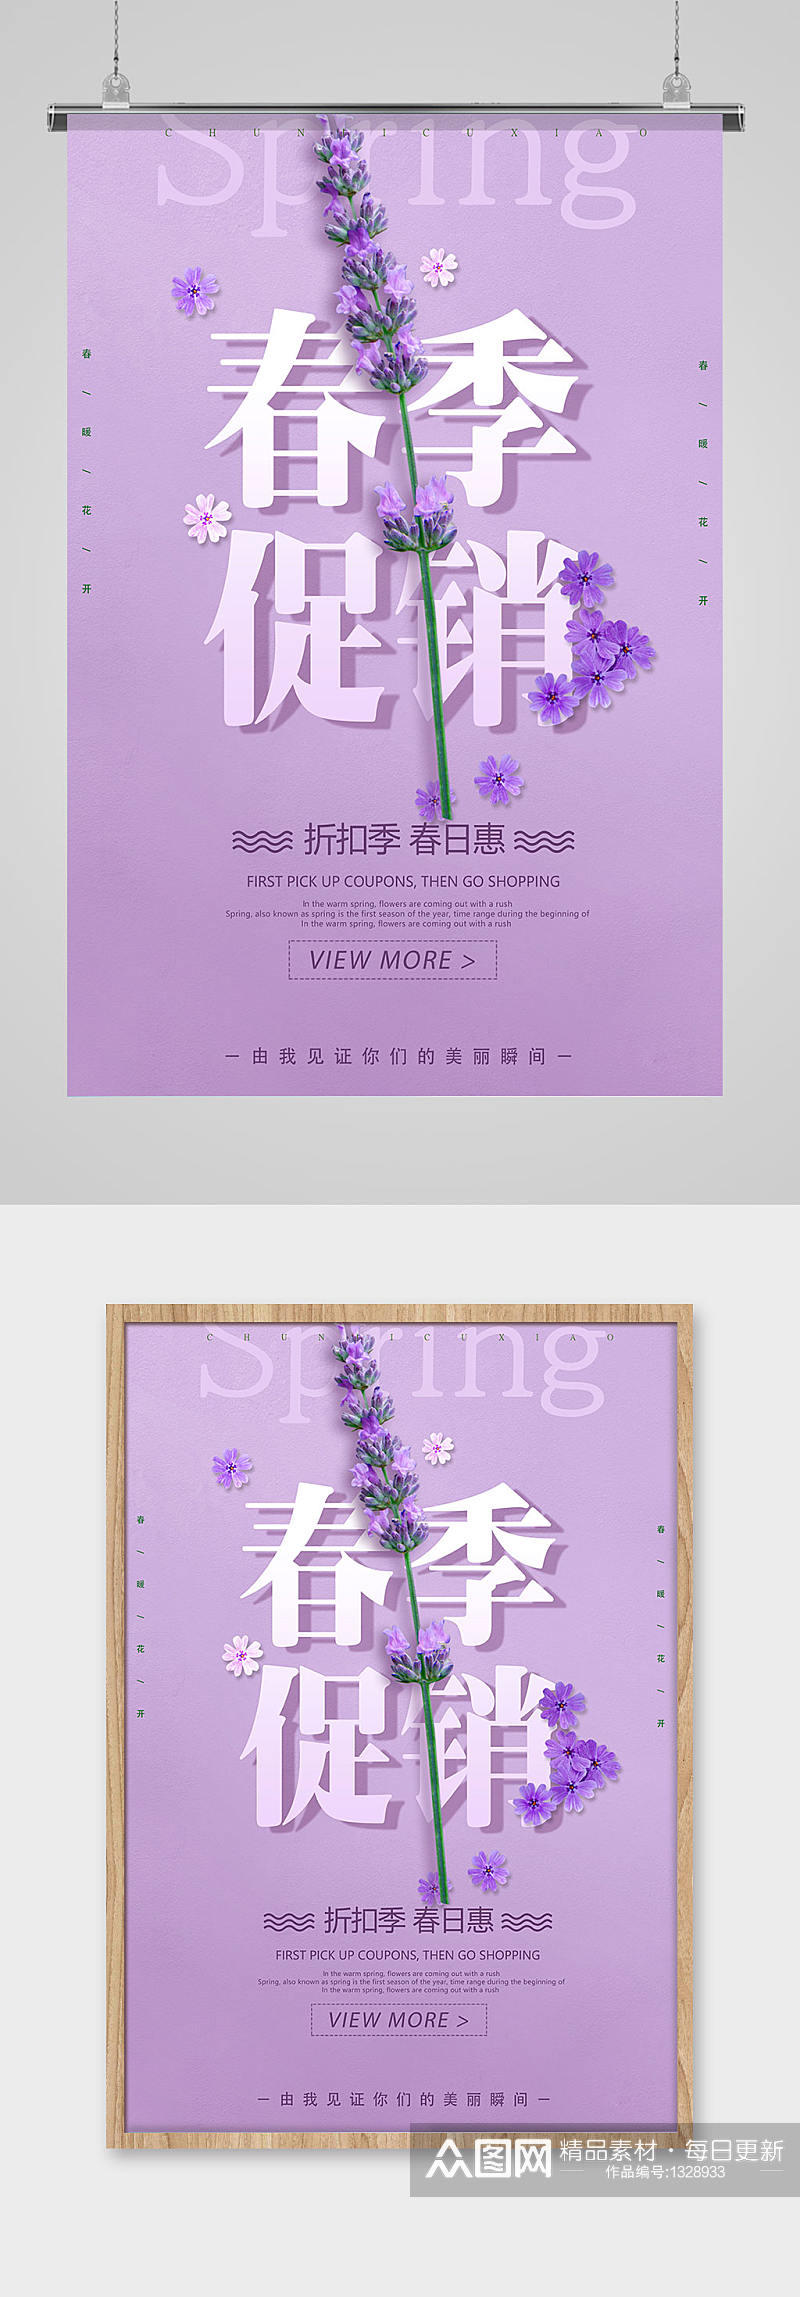 紫色清新春季促销活动海报素材